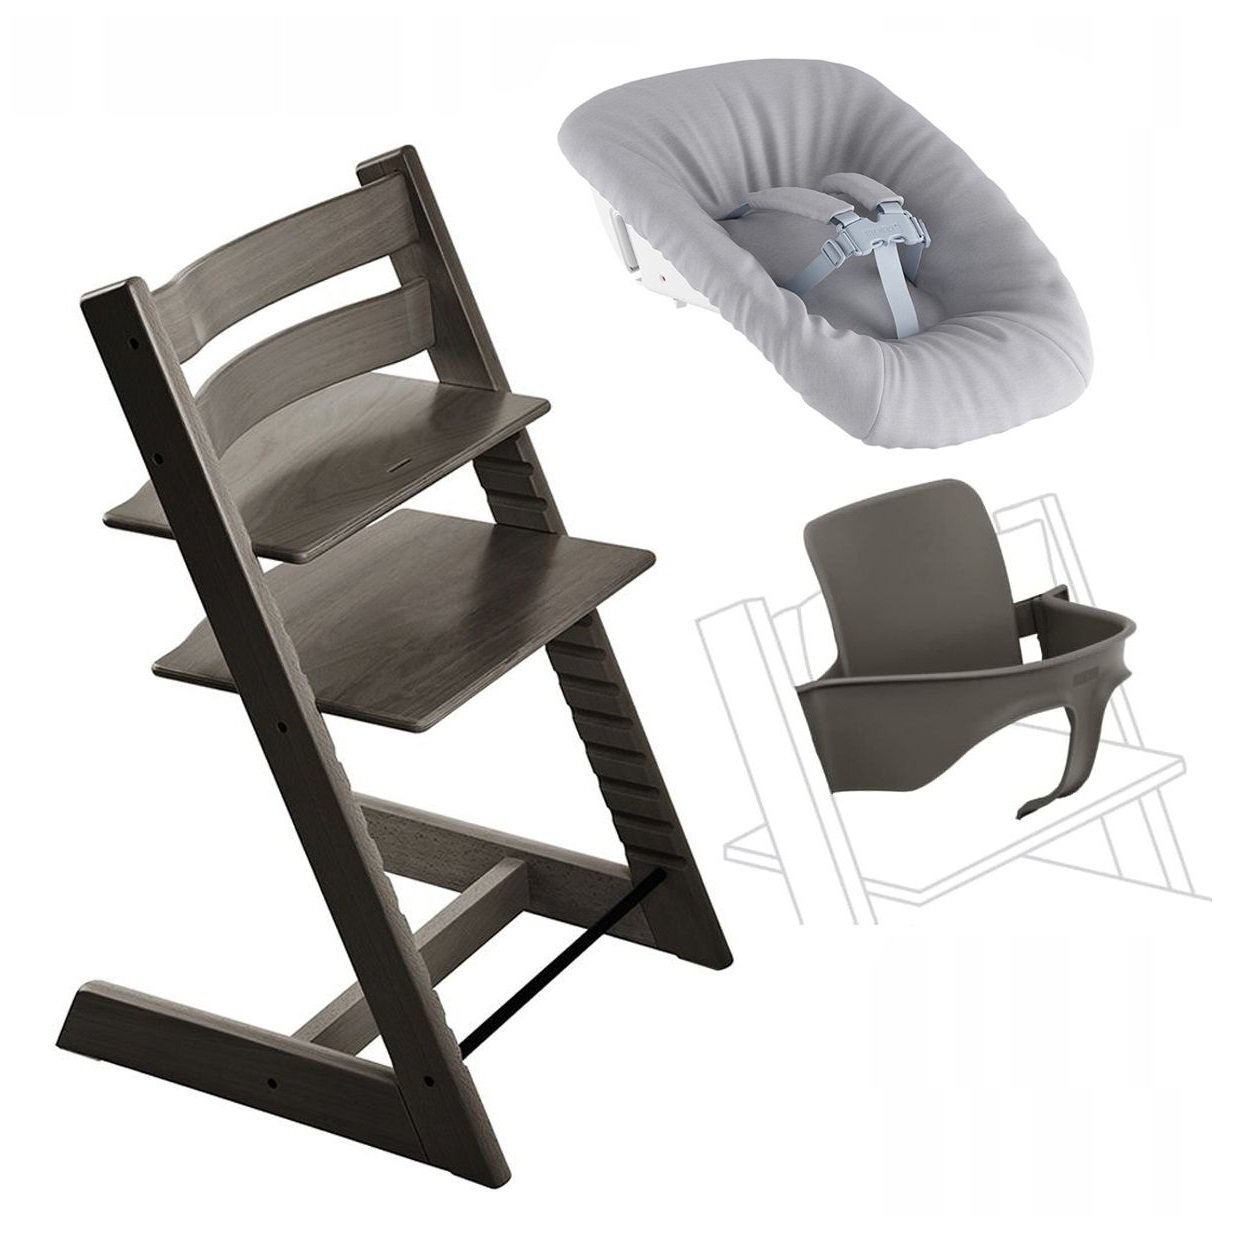 Набор Stokke Tripp Trapp Hazy Grey: стульчик, спинка с ограничителем Baby Set и кресло для новорожденных Newborn (k.100126.00) - фото 1